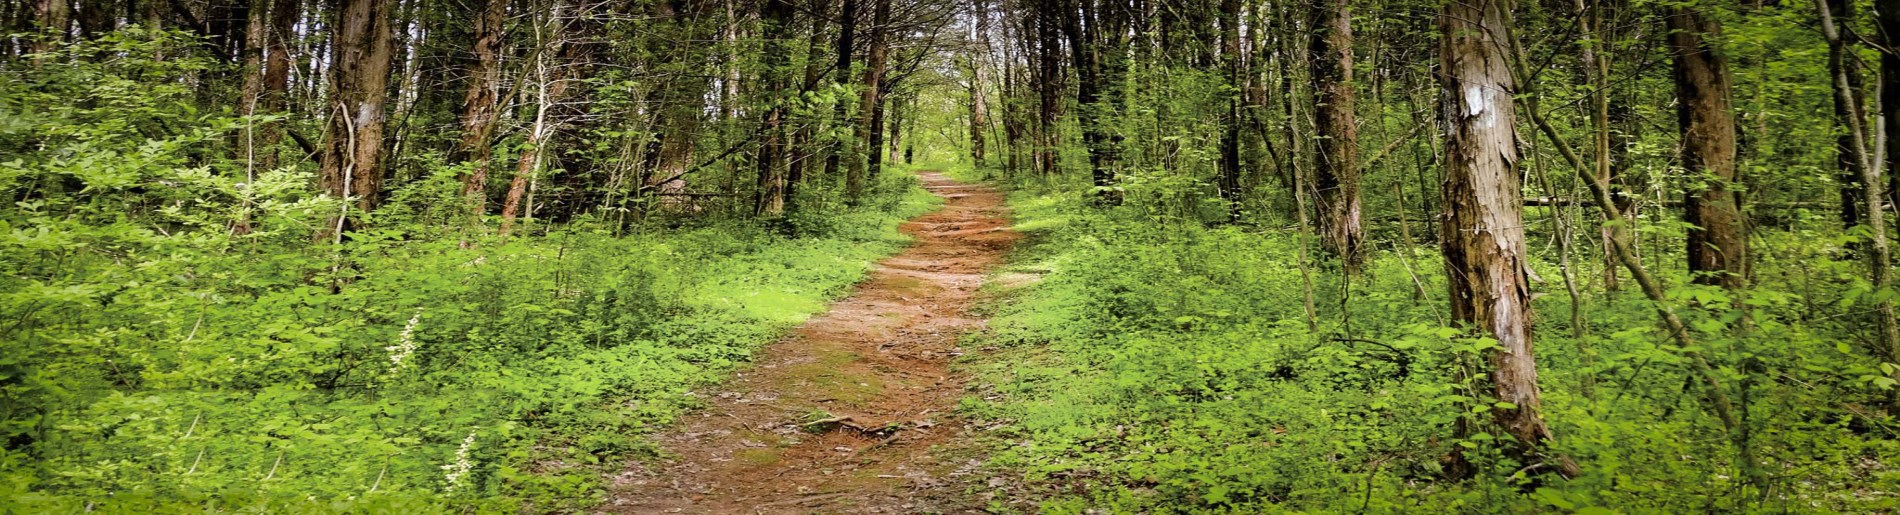 Pathways through trail through tress